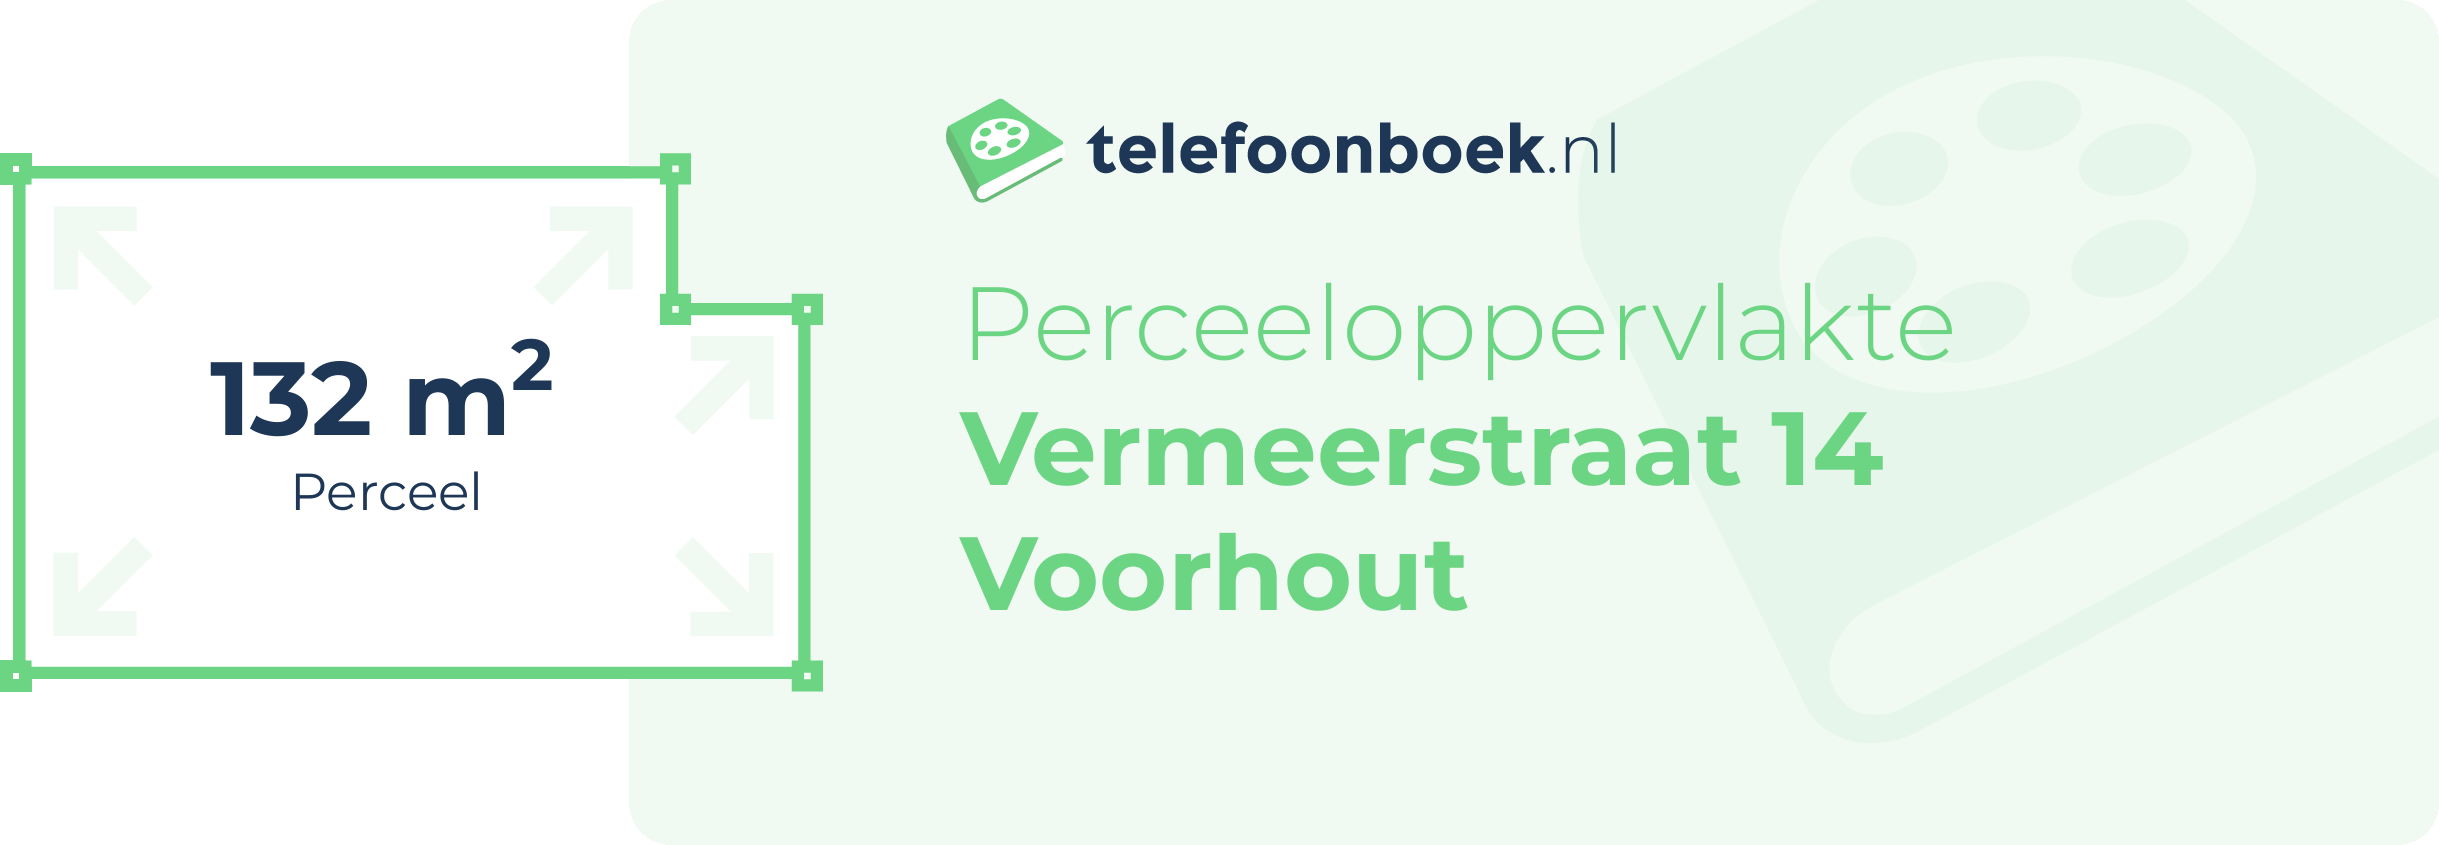 Perceeloppervlakte Vermeerstraat 14 Voorhout